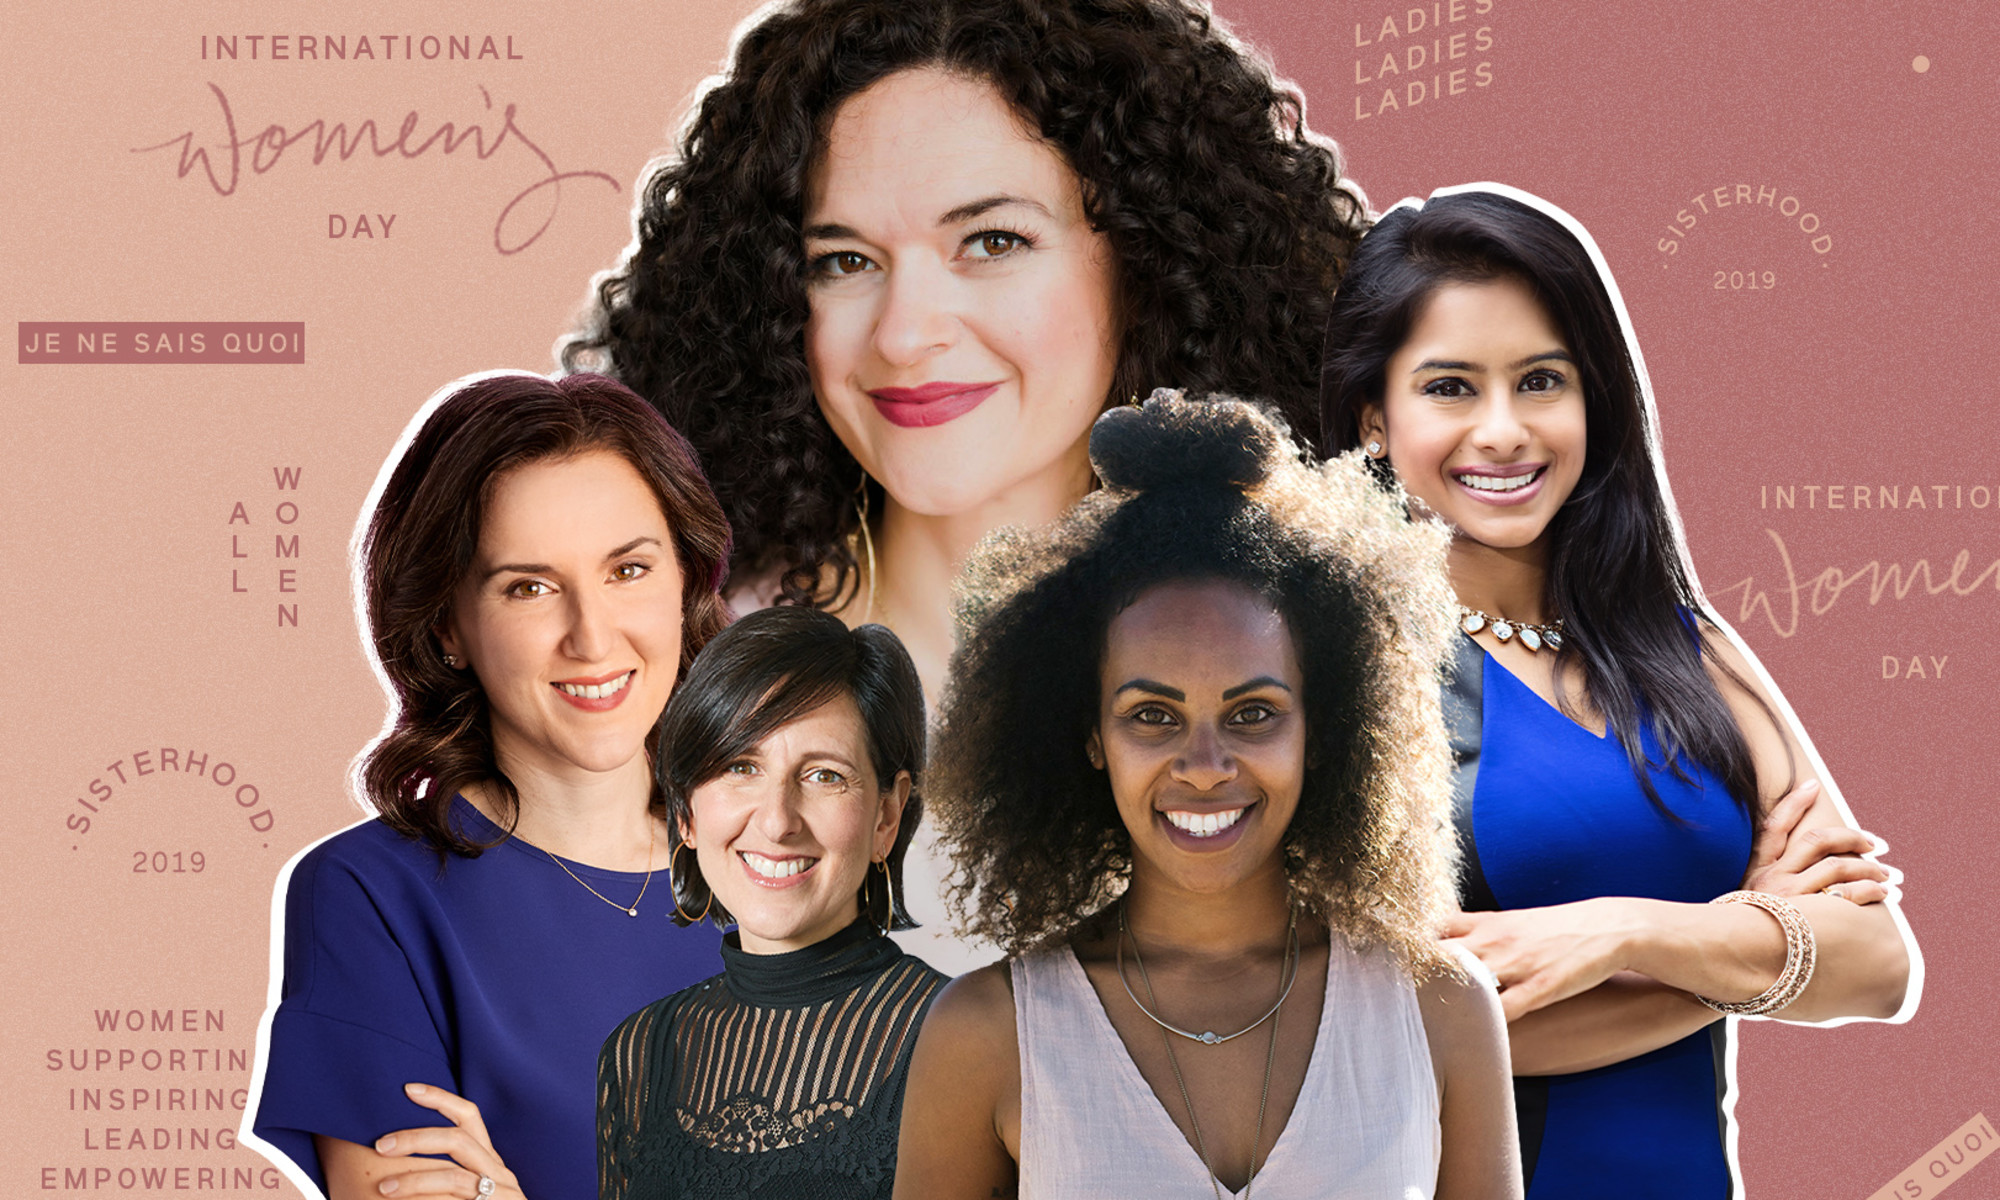 30 Specific Ways To Empower Women mindbodygreen